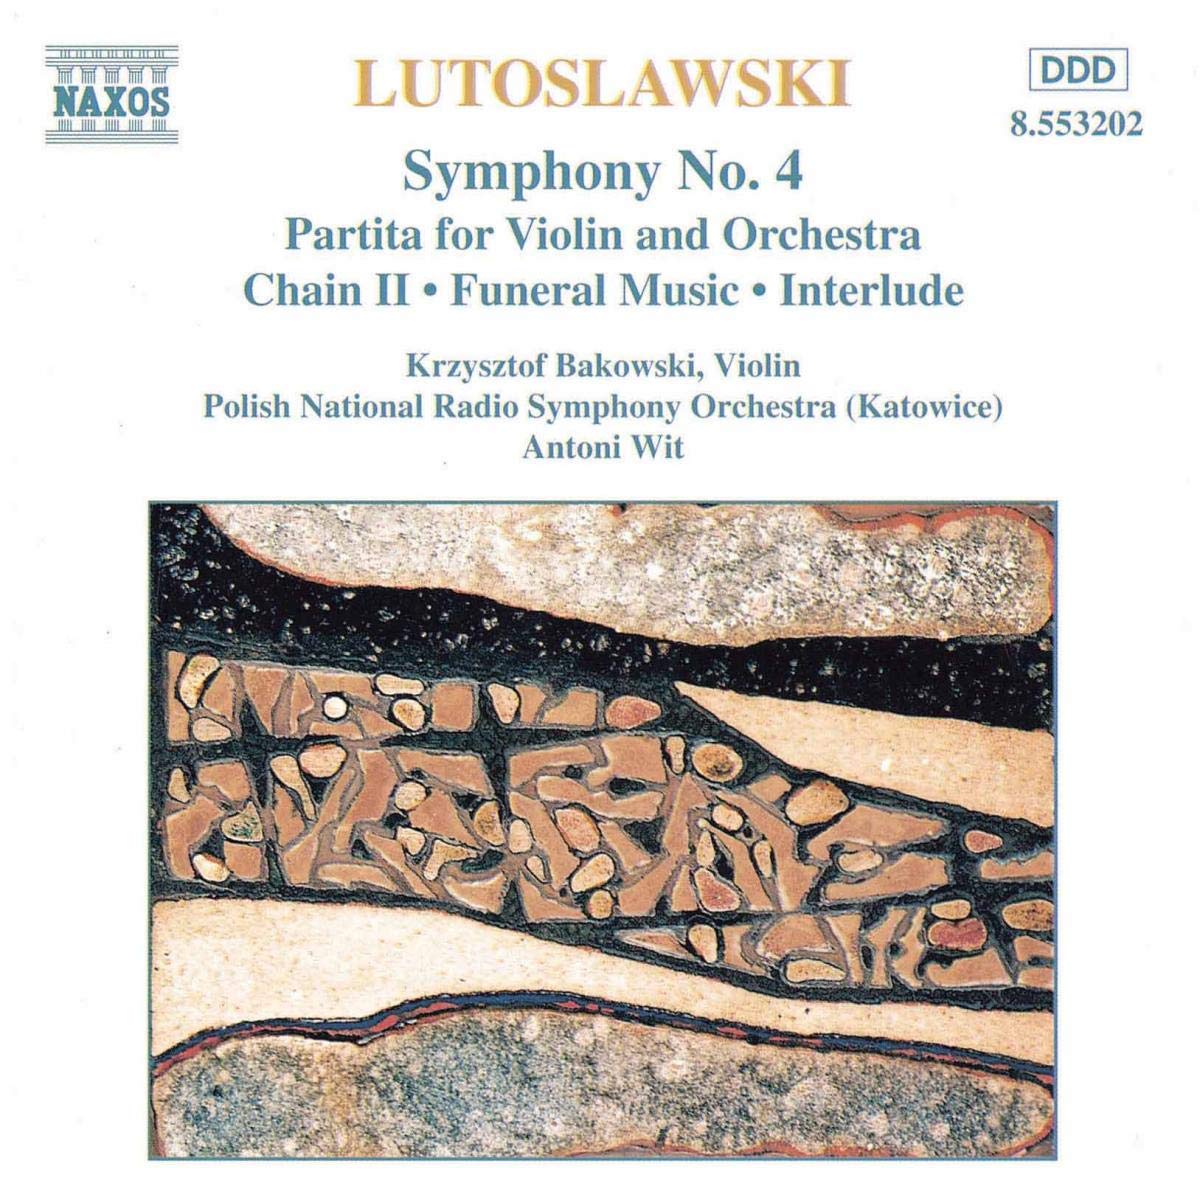 Lutosławski: Symphony No. 4 - Partita